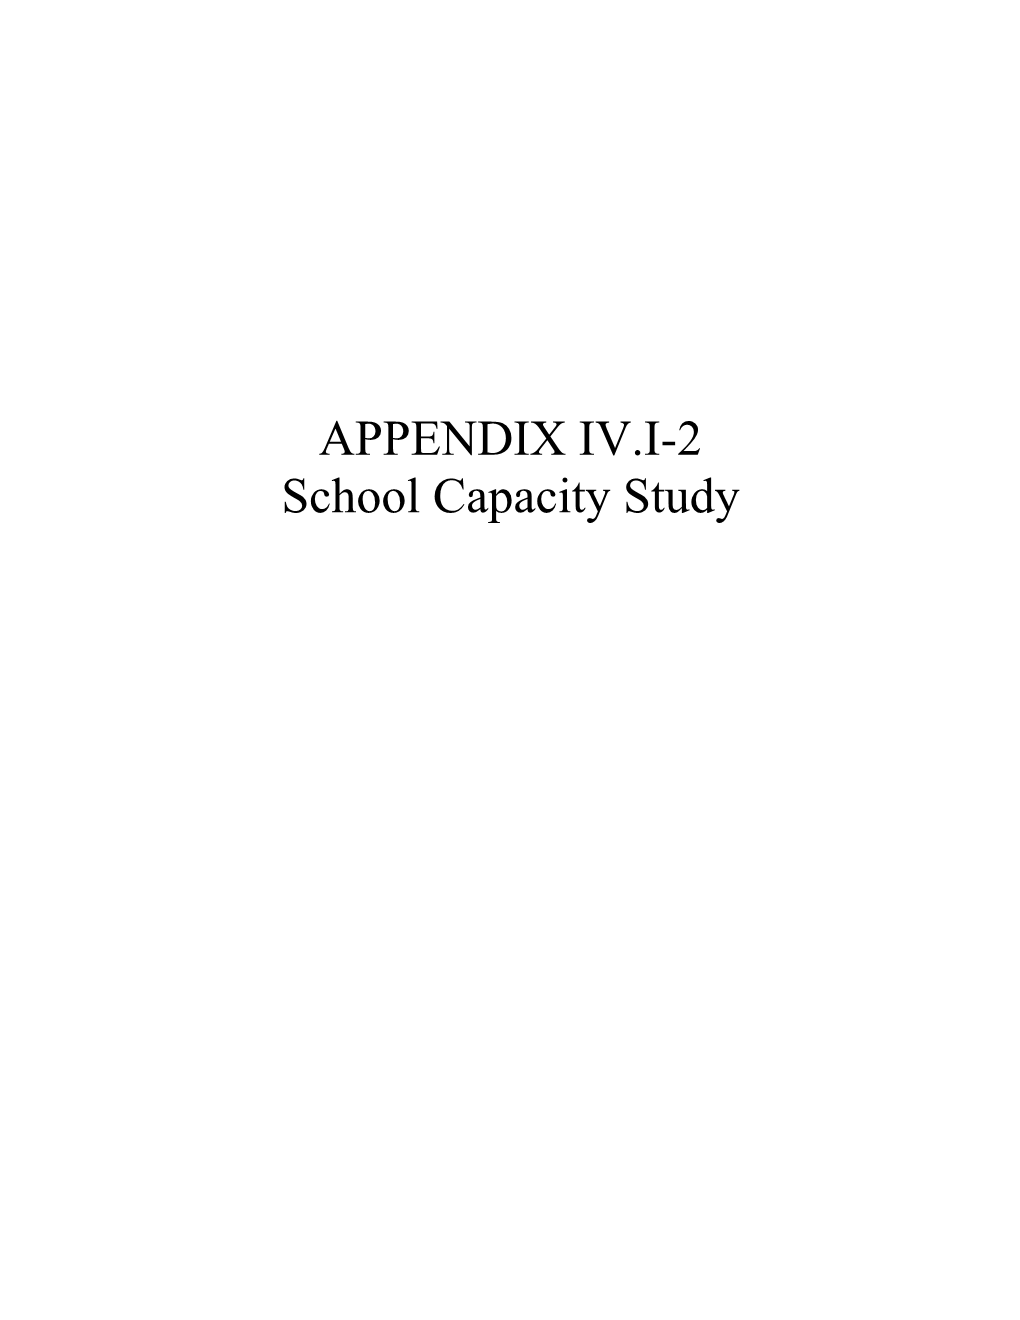 APPENDIX IV.I-2 School Capacity Study